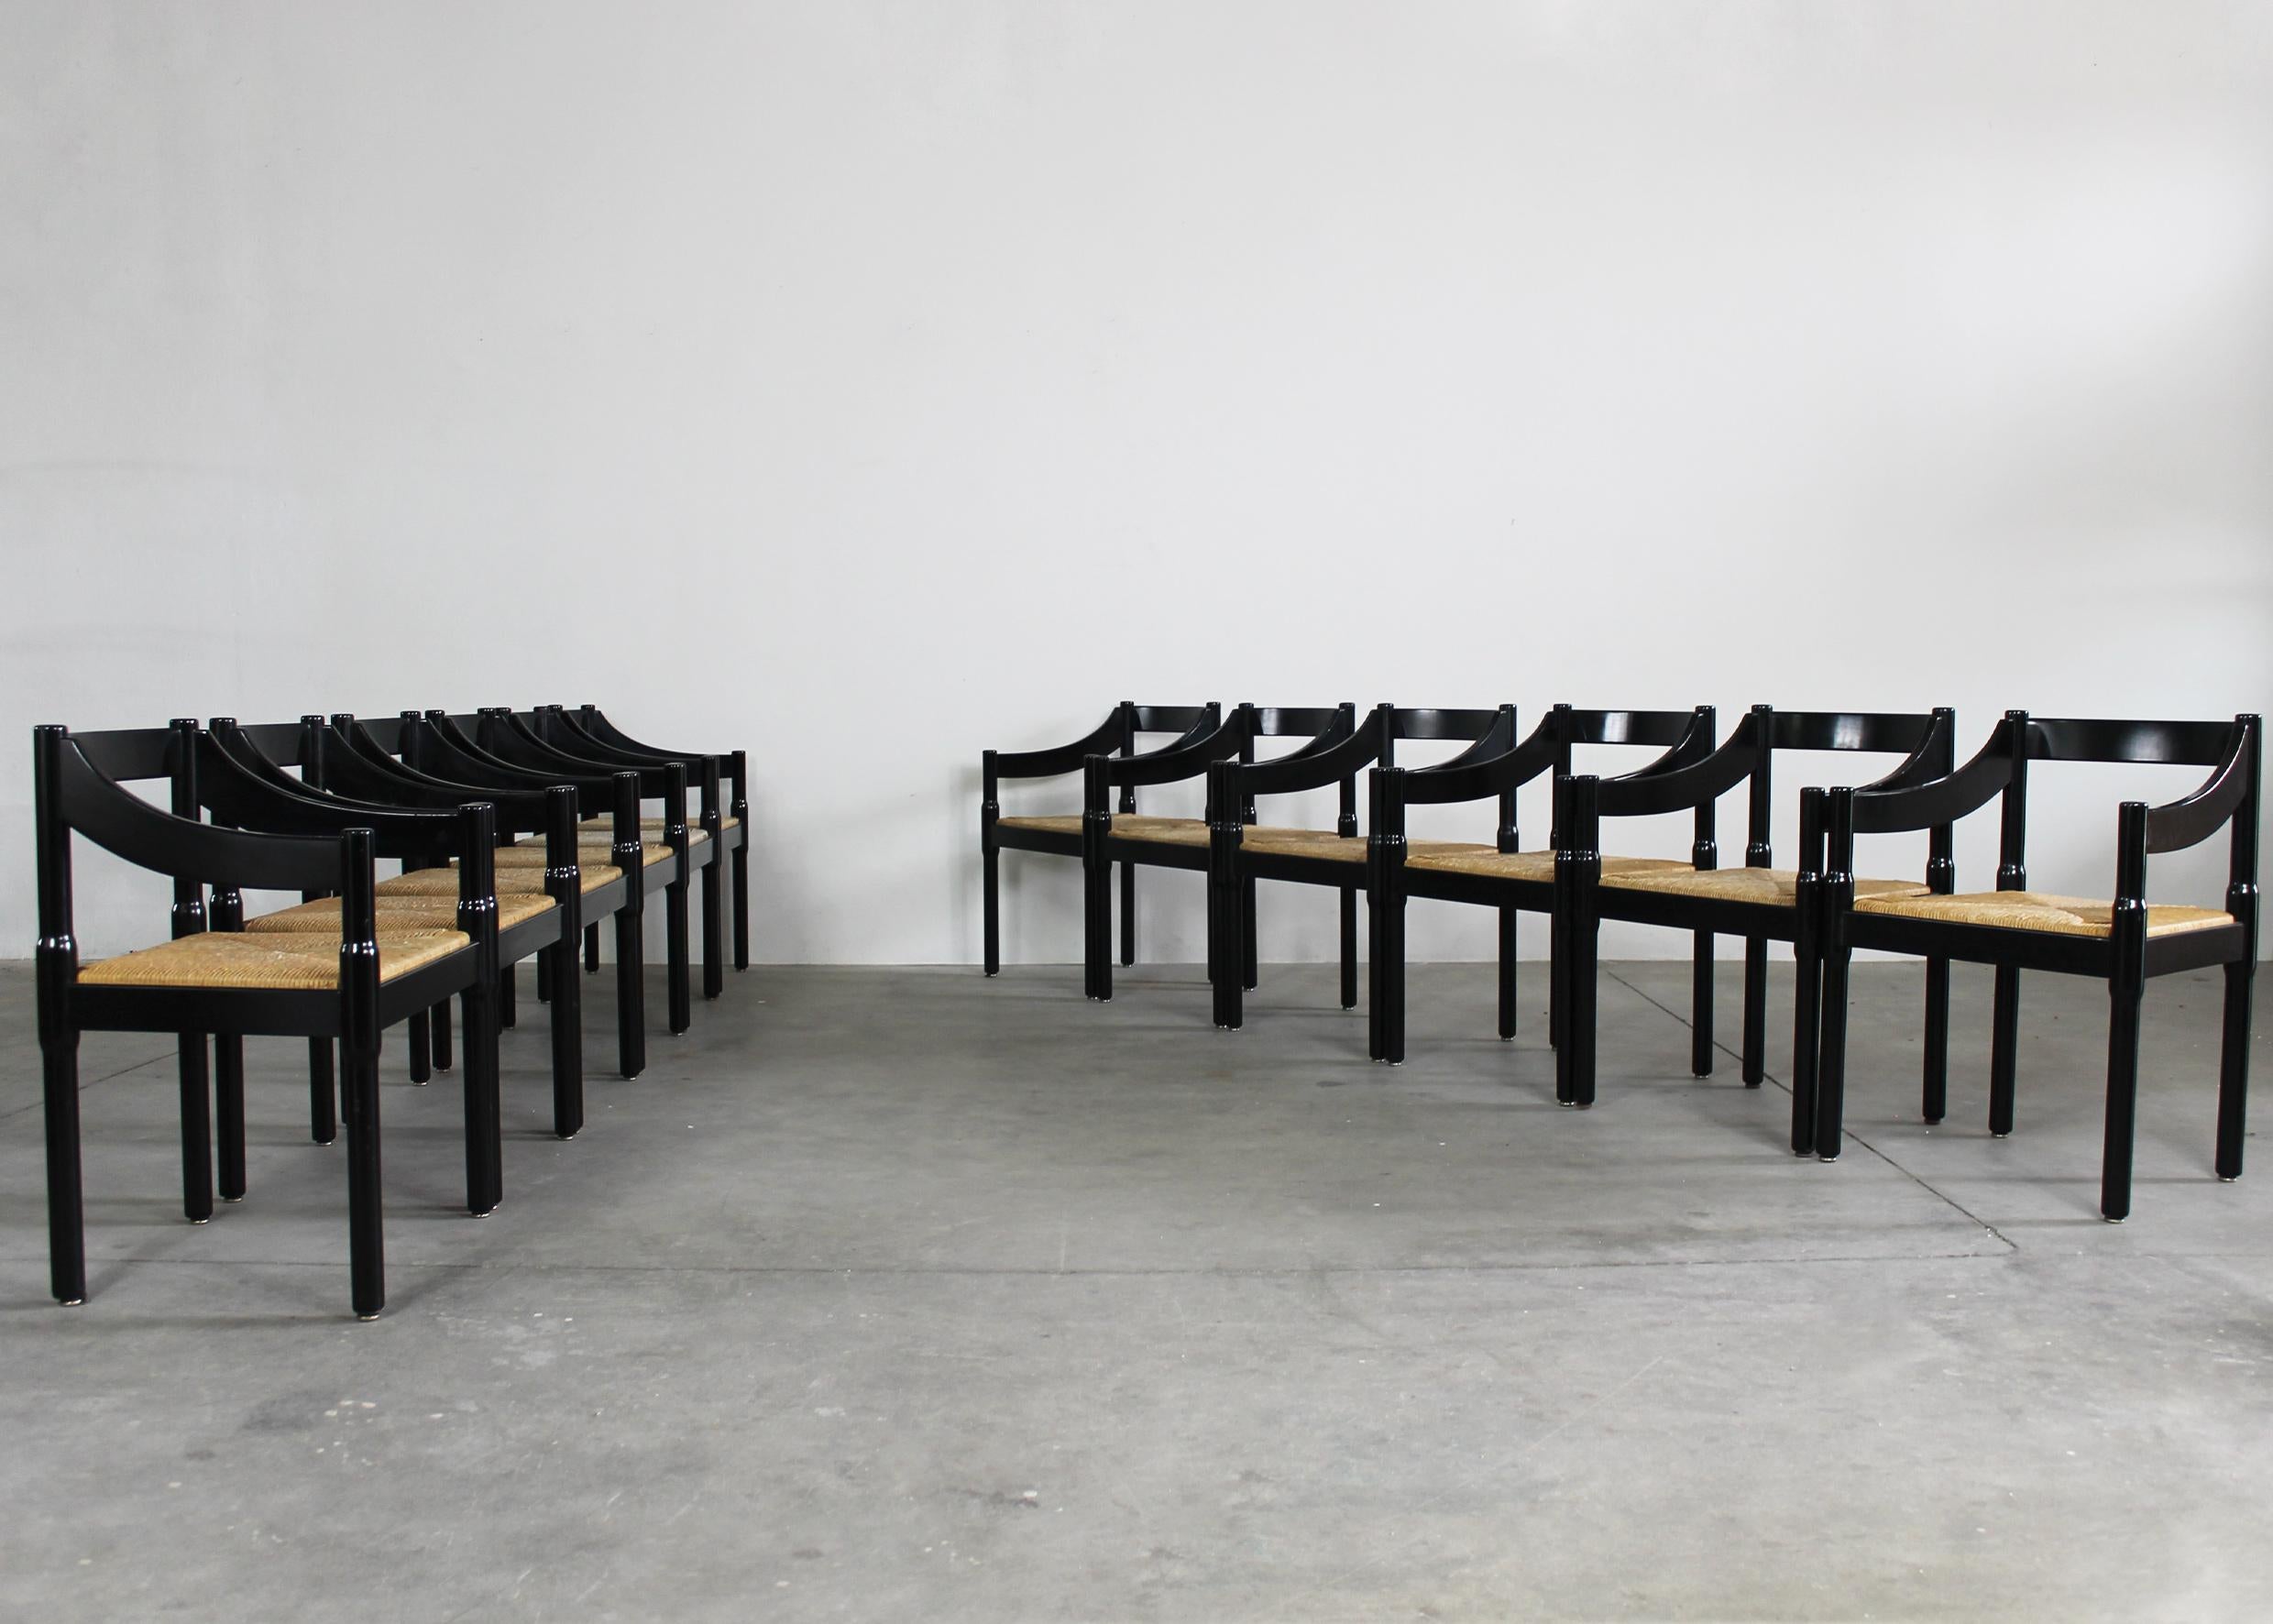 Ensemble de douze chaises Carimate avec structure en bois de hêtre laqué noir et assise en paille tressée, conçues par Vico Magistretti et produites par Cassina dans les années 1960. 

La chaise Carimate a été conçue à l'origine pour le Carimate